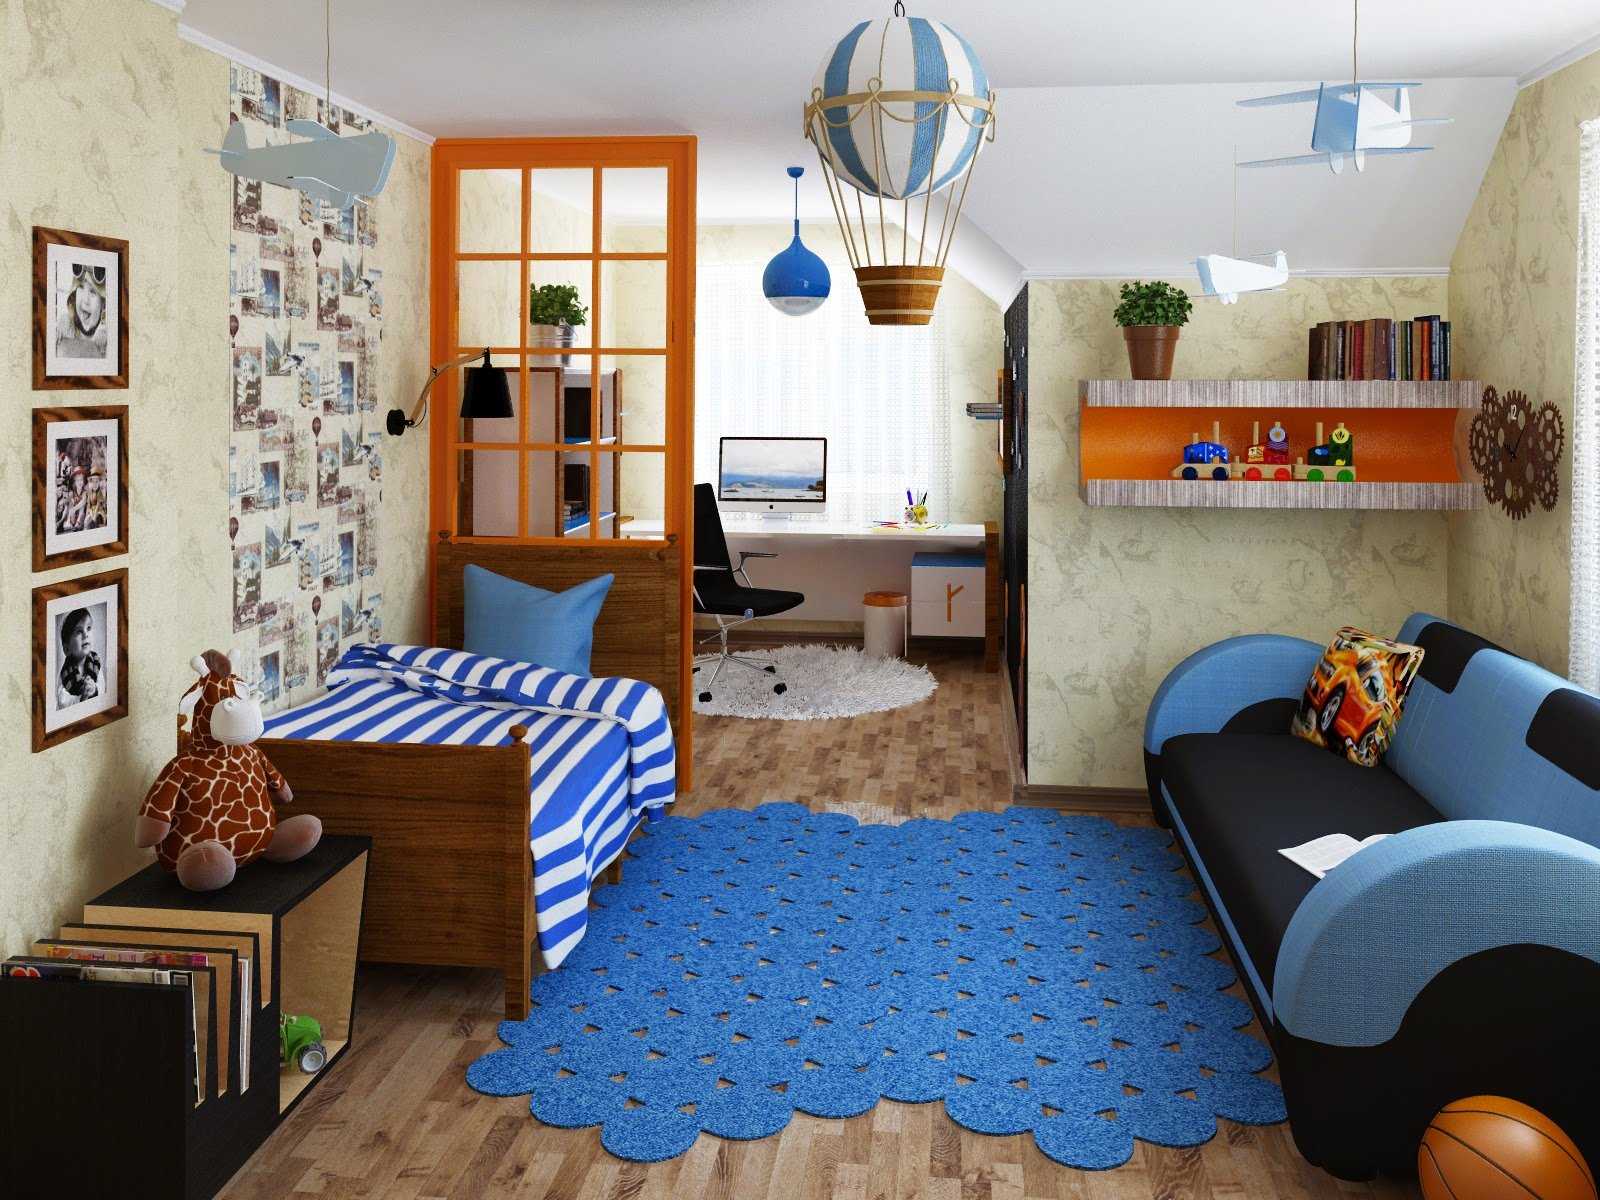 Детская комната для мальчика: 132 фото (реальные) и идеи дизайна